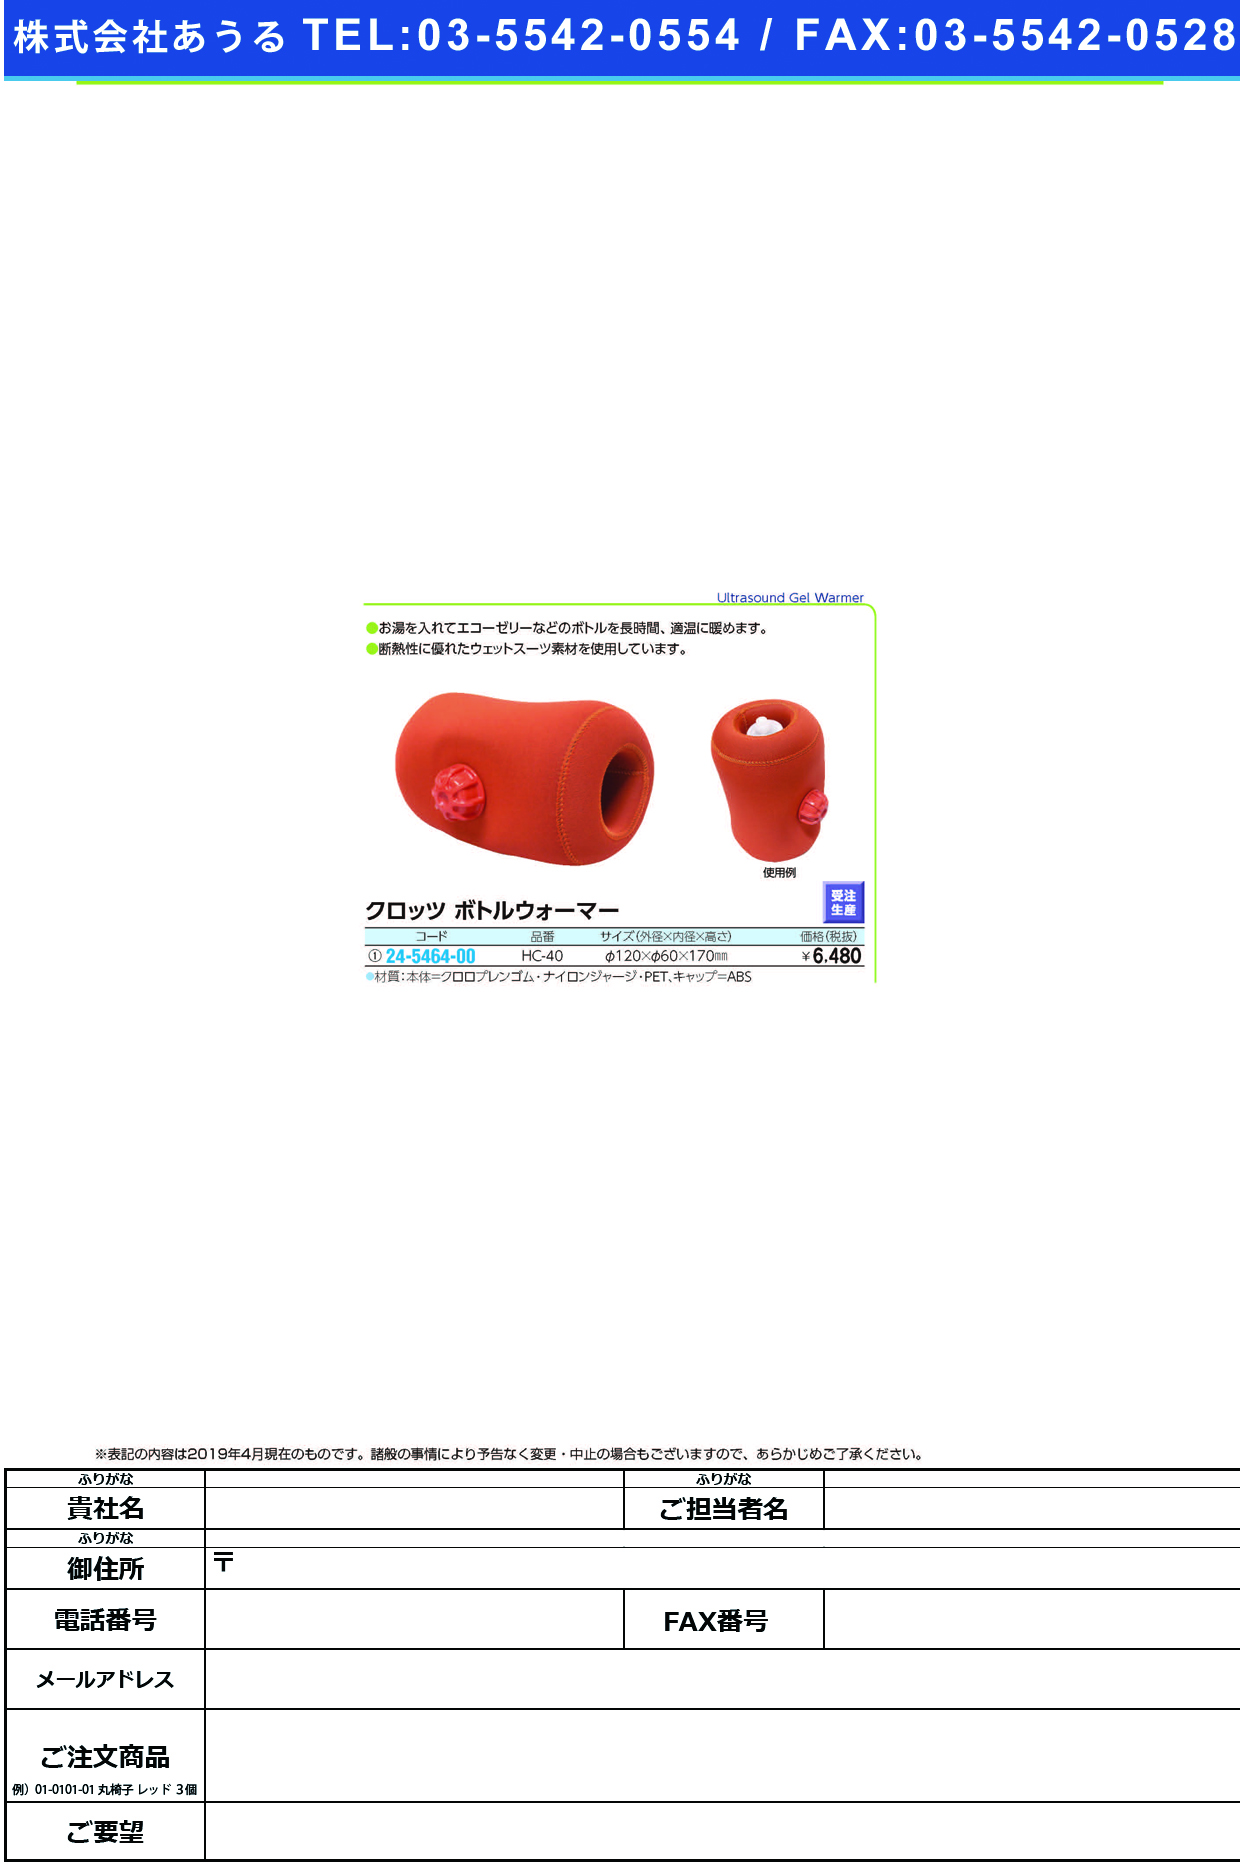 (24-5464-00)クロッツボトルウォーマー HC-40 ｸﾛｯﾂﾎﾞﾄﾙｳｫｰﾏｰ【1個単位】【2019年カタログ商品】